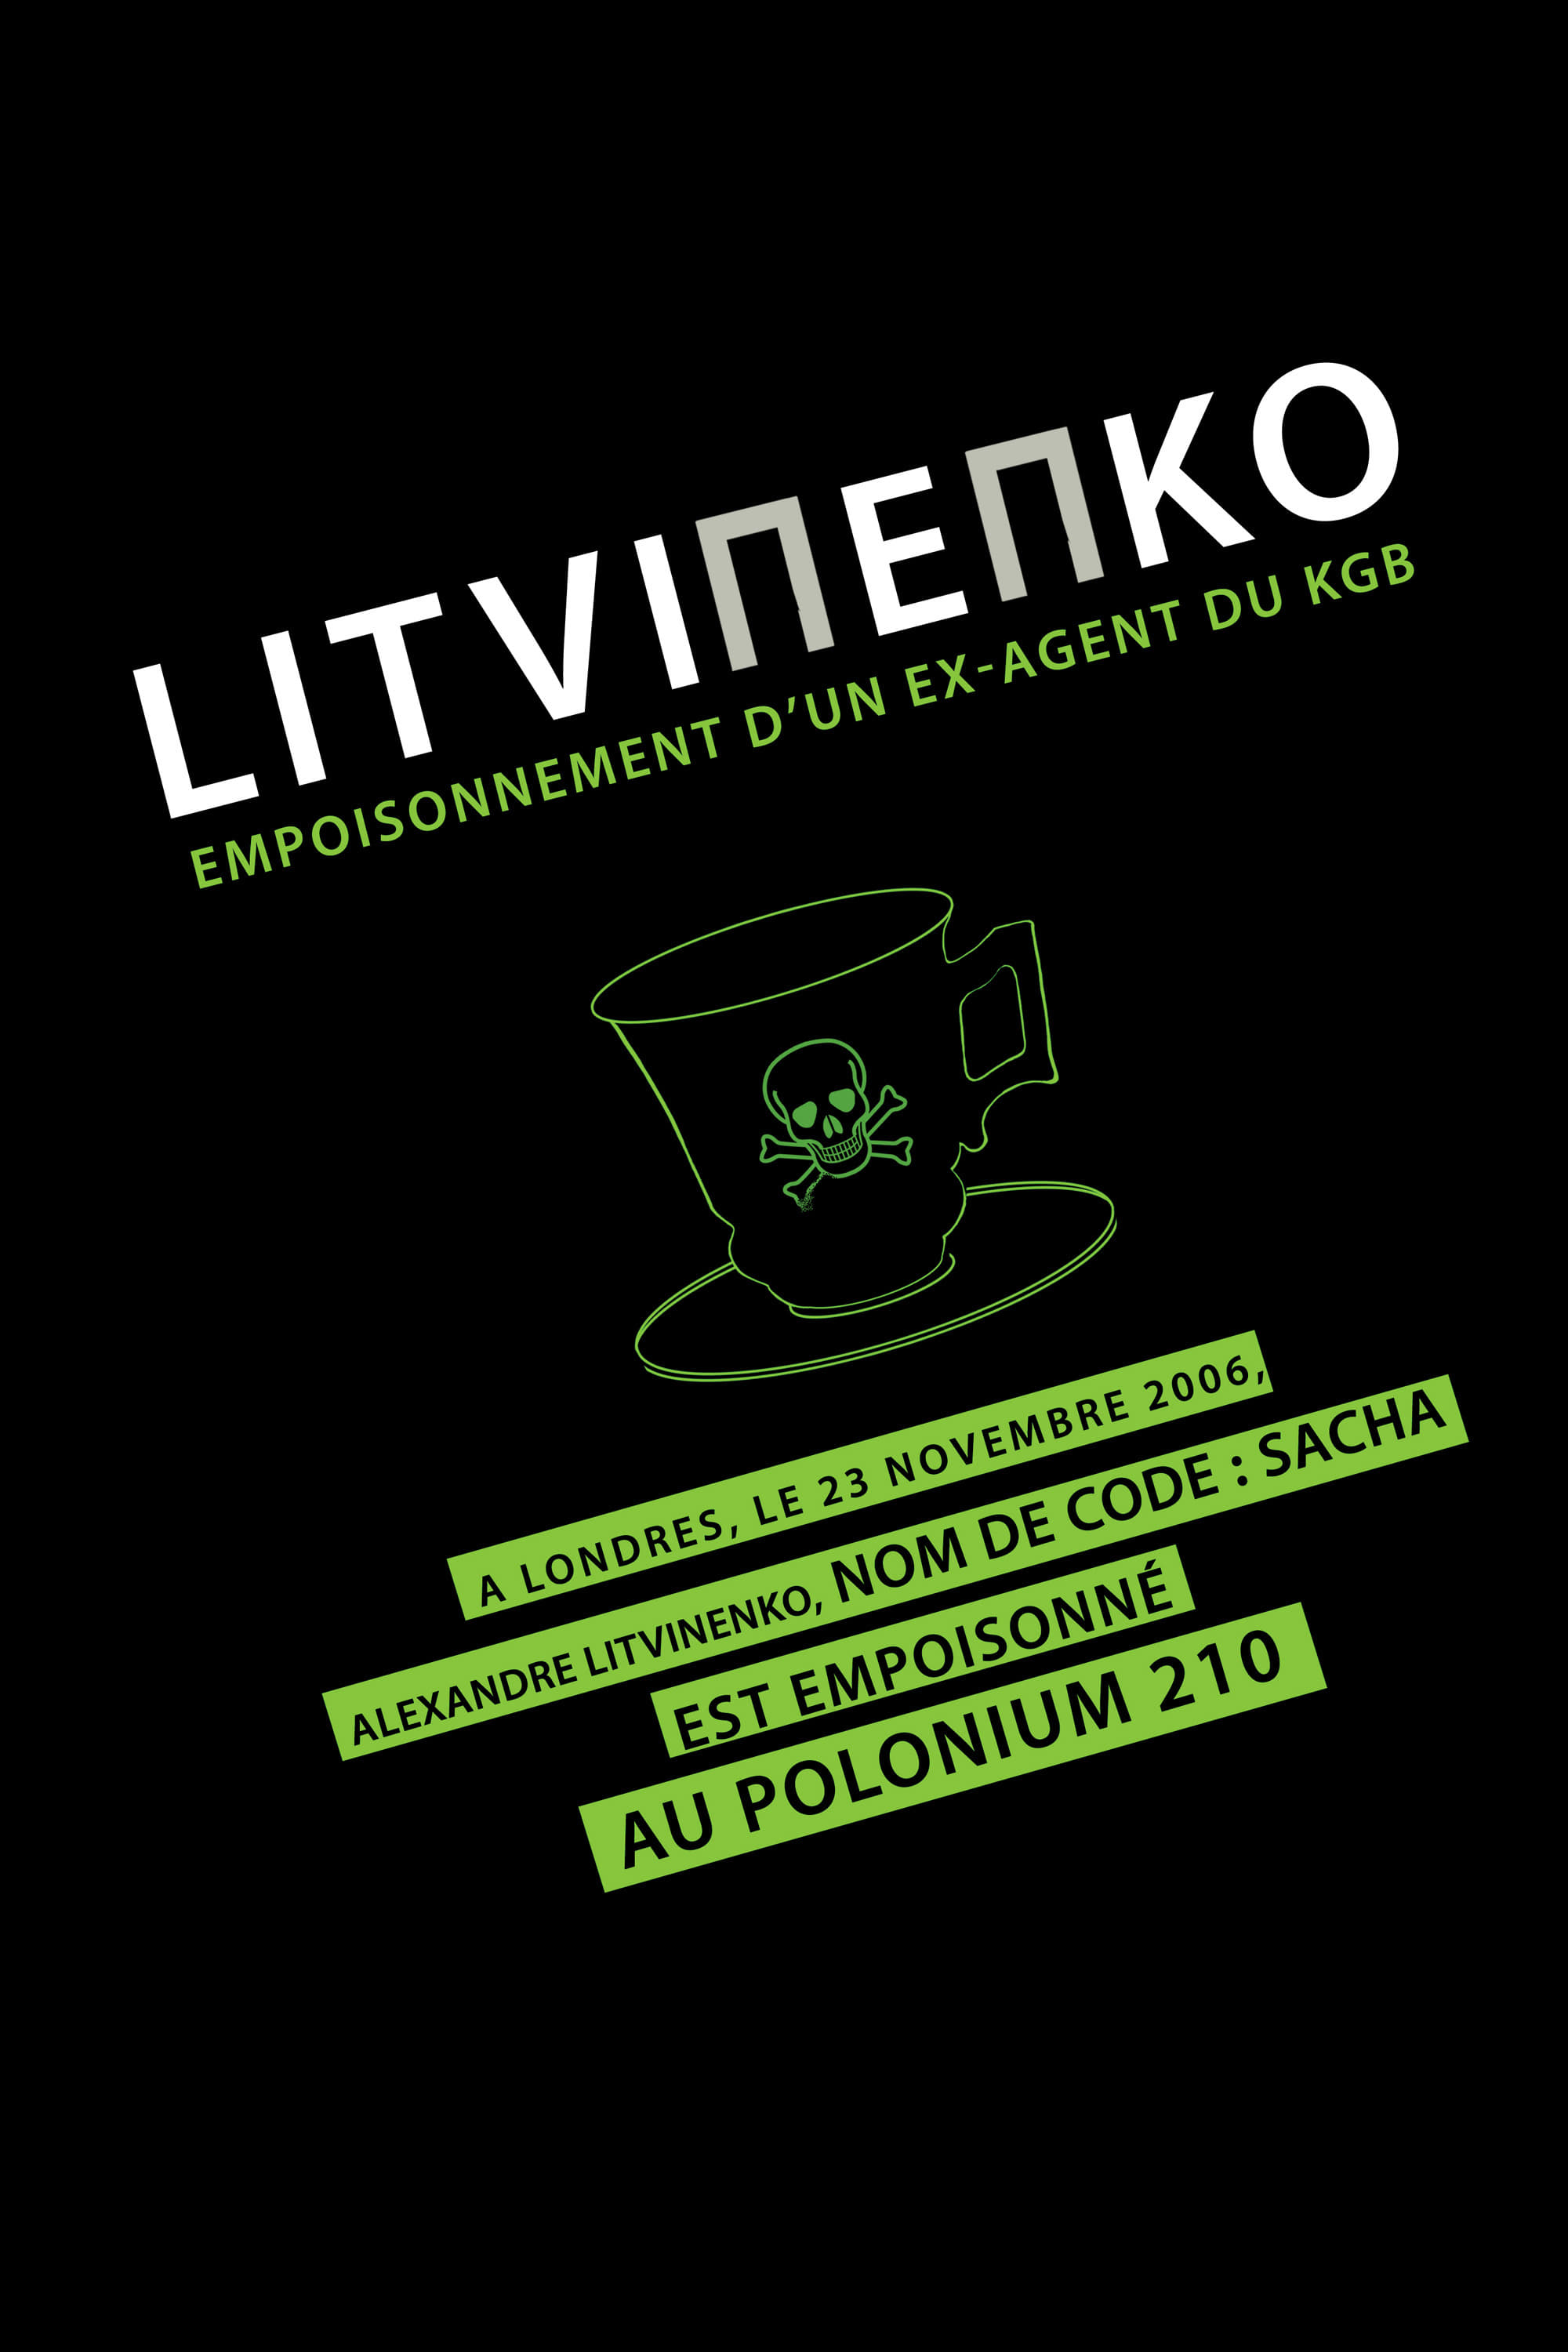 Litvinenko, empoisonnement d'un ex agent du KGB